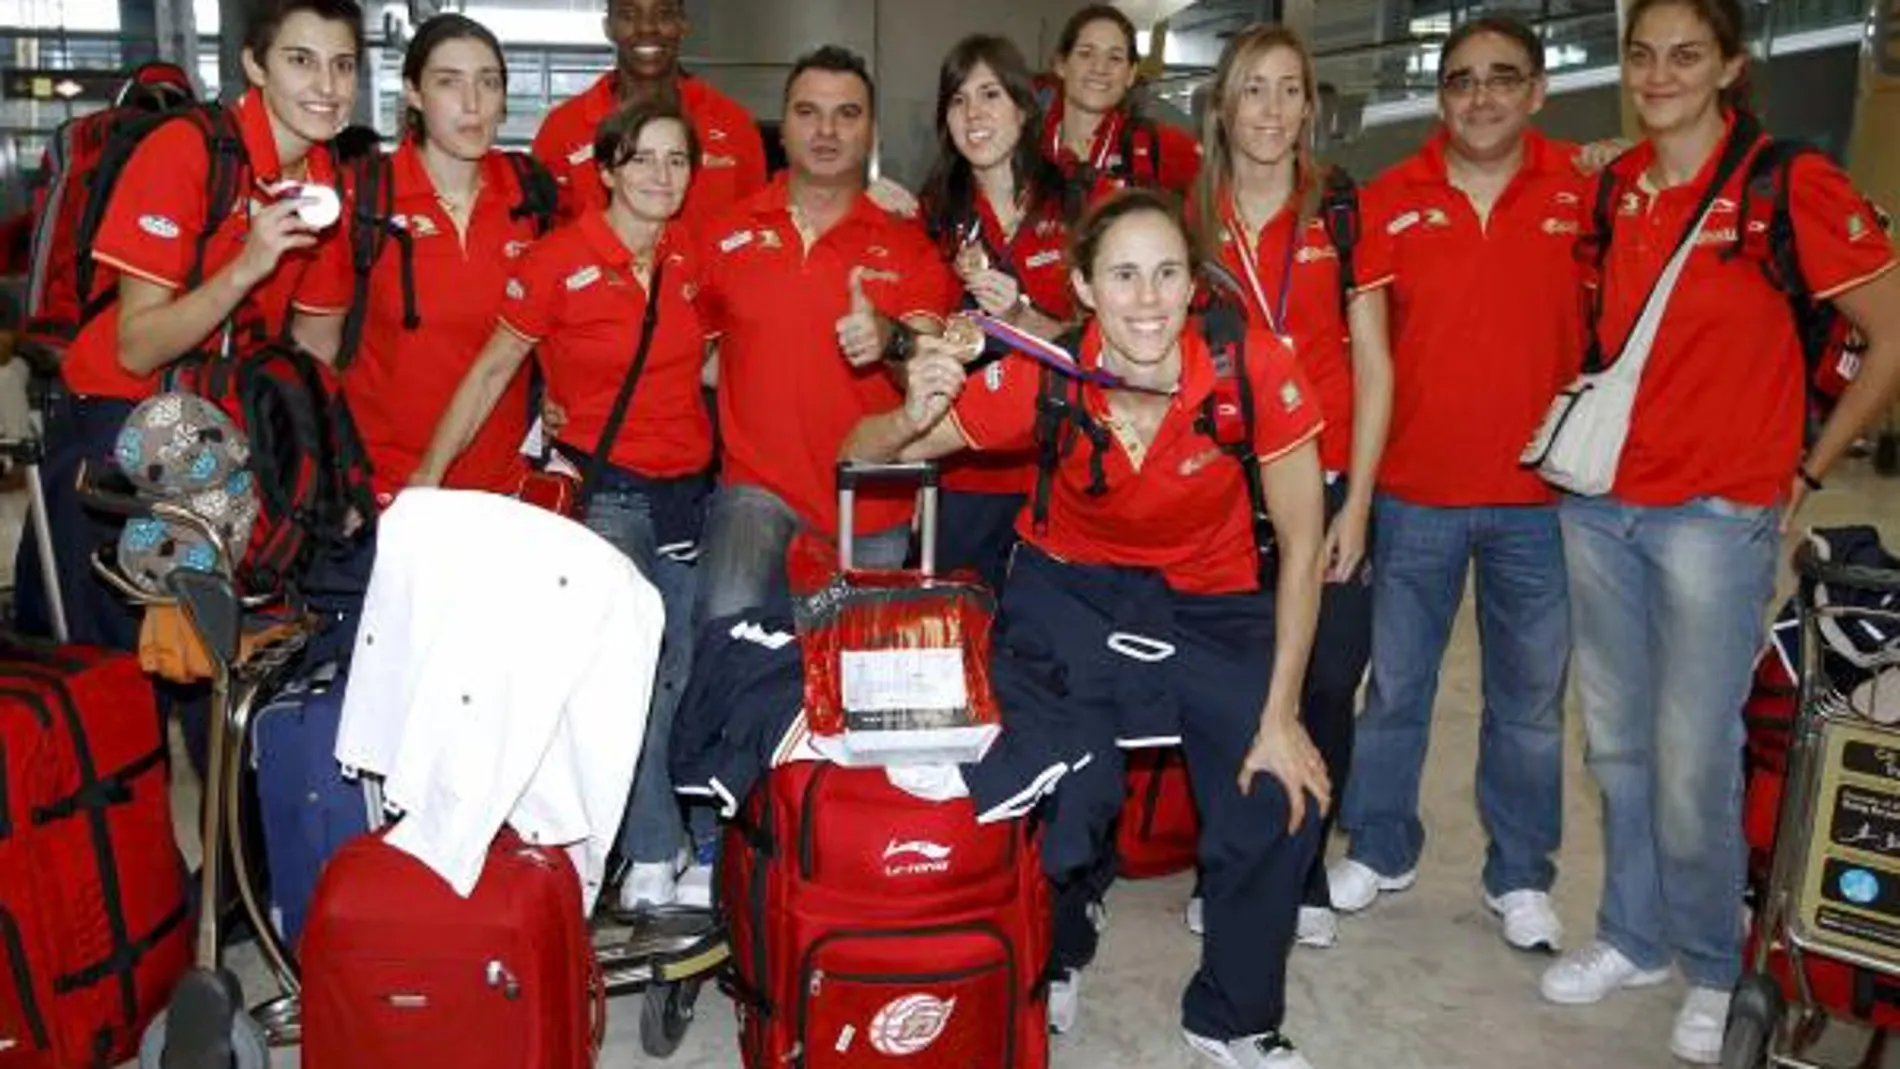 La selección femenina de baloncesto llega a Madrid tras conseguir el bronce en el mundial